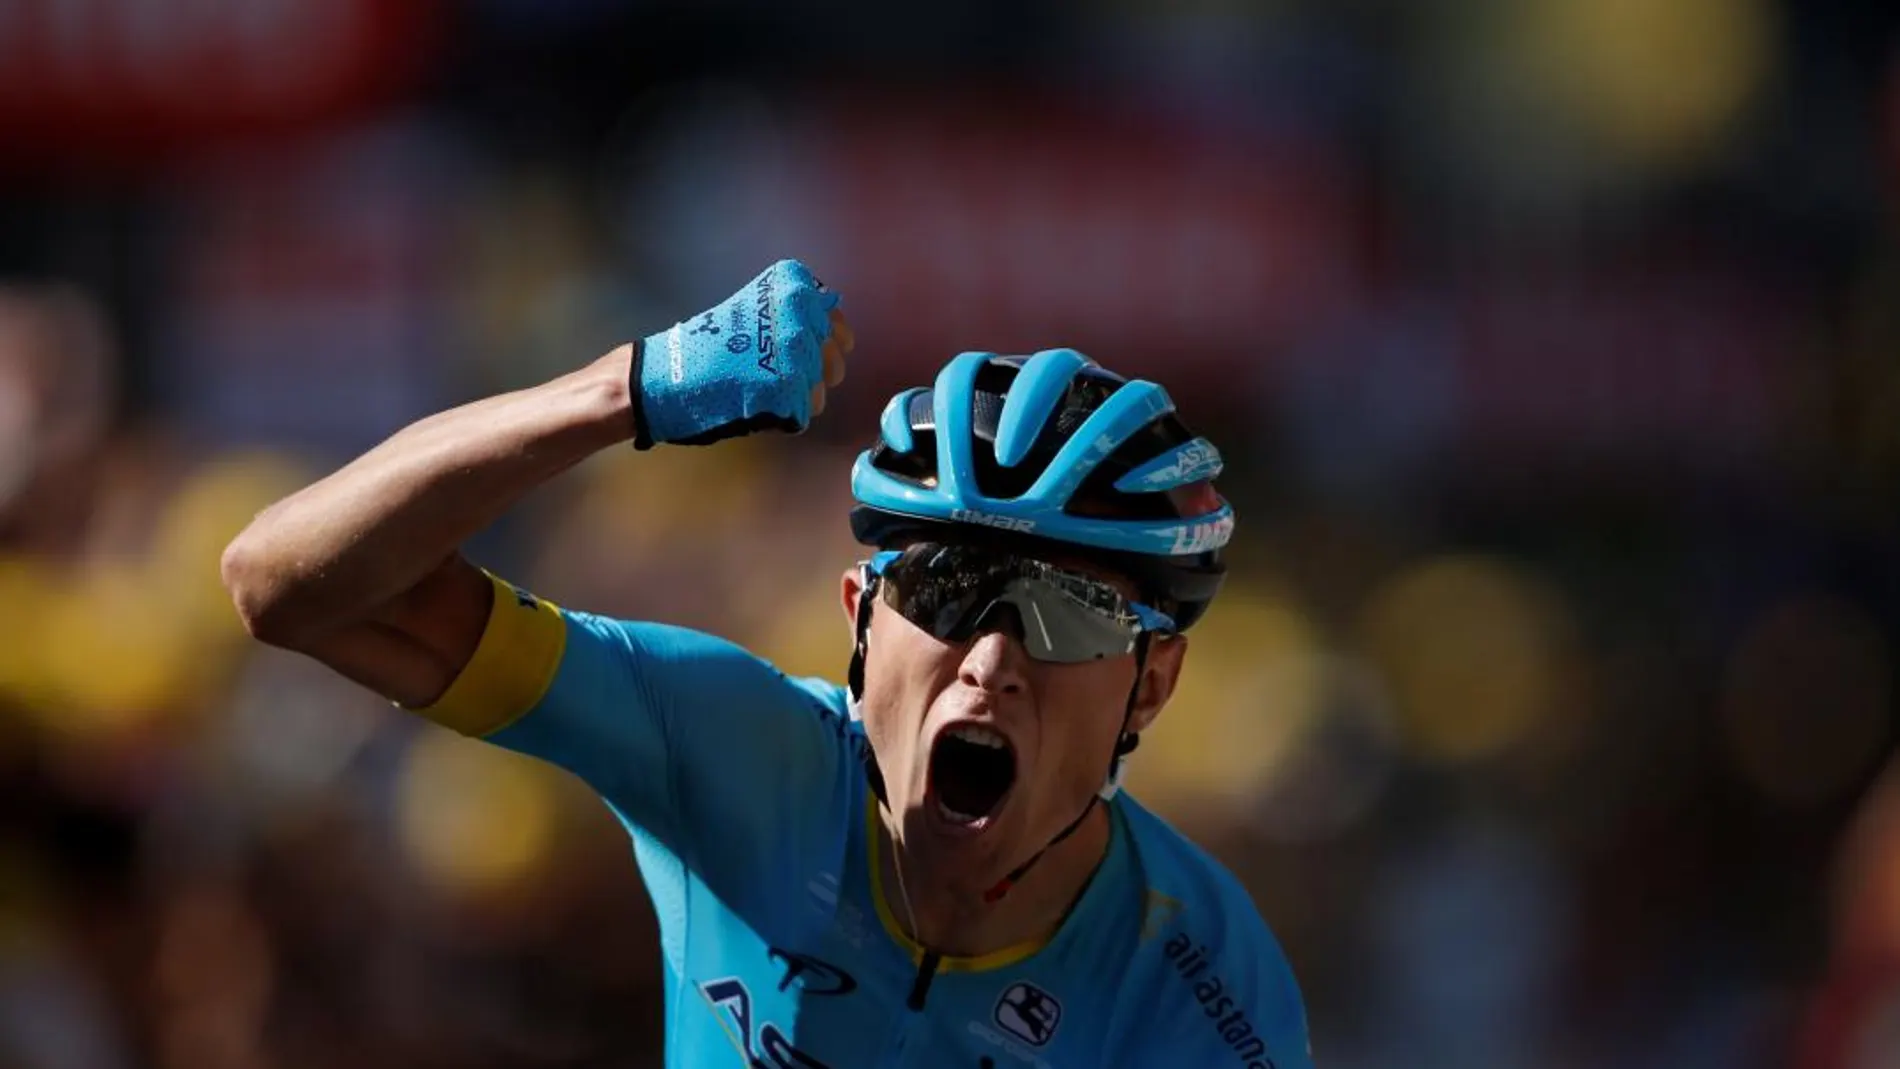 El danés Magnus Cort Nielsen gana la etapa del Tour. REUTERS/Stephane Mahe